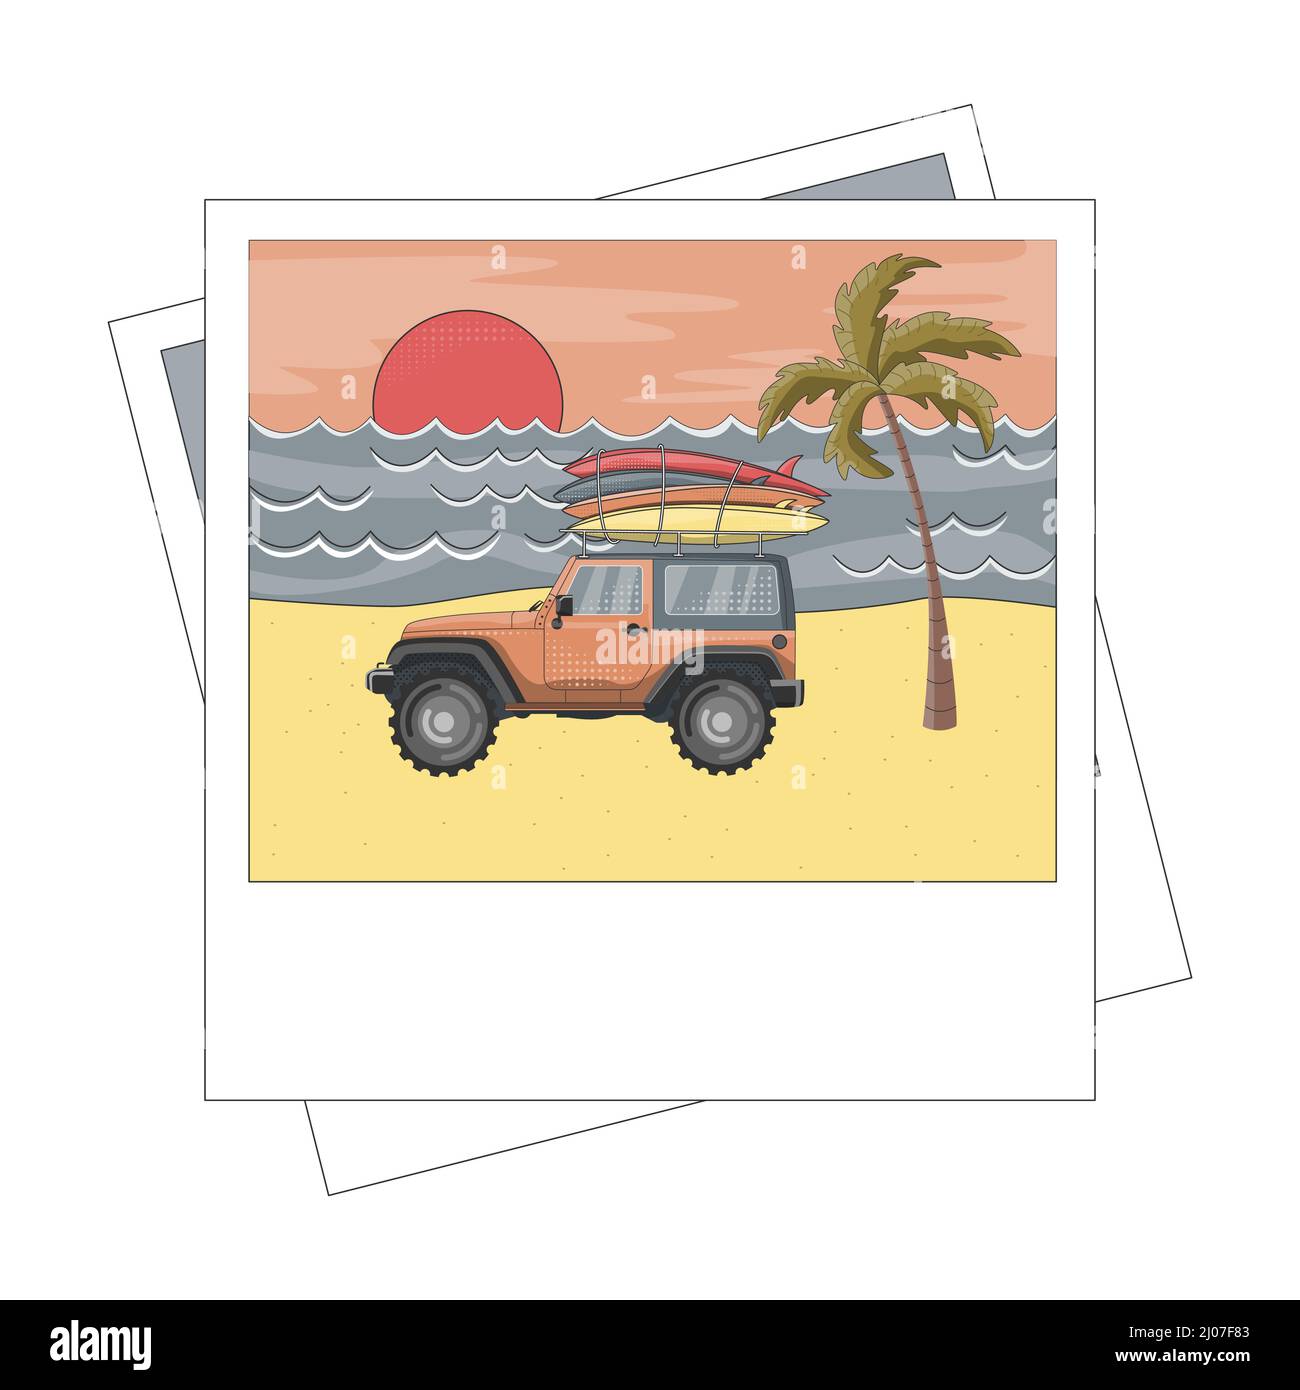 Auto mit Surfbrettern am Meer, Palmen und Sonnenuntergang. Flache Vektordarstellung im Fotozonenrahmen. Stock Vektor